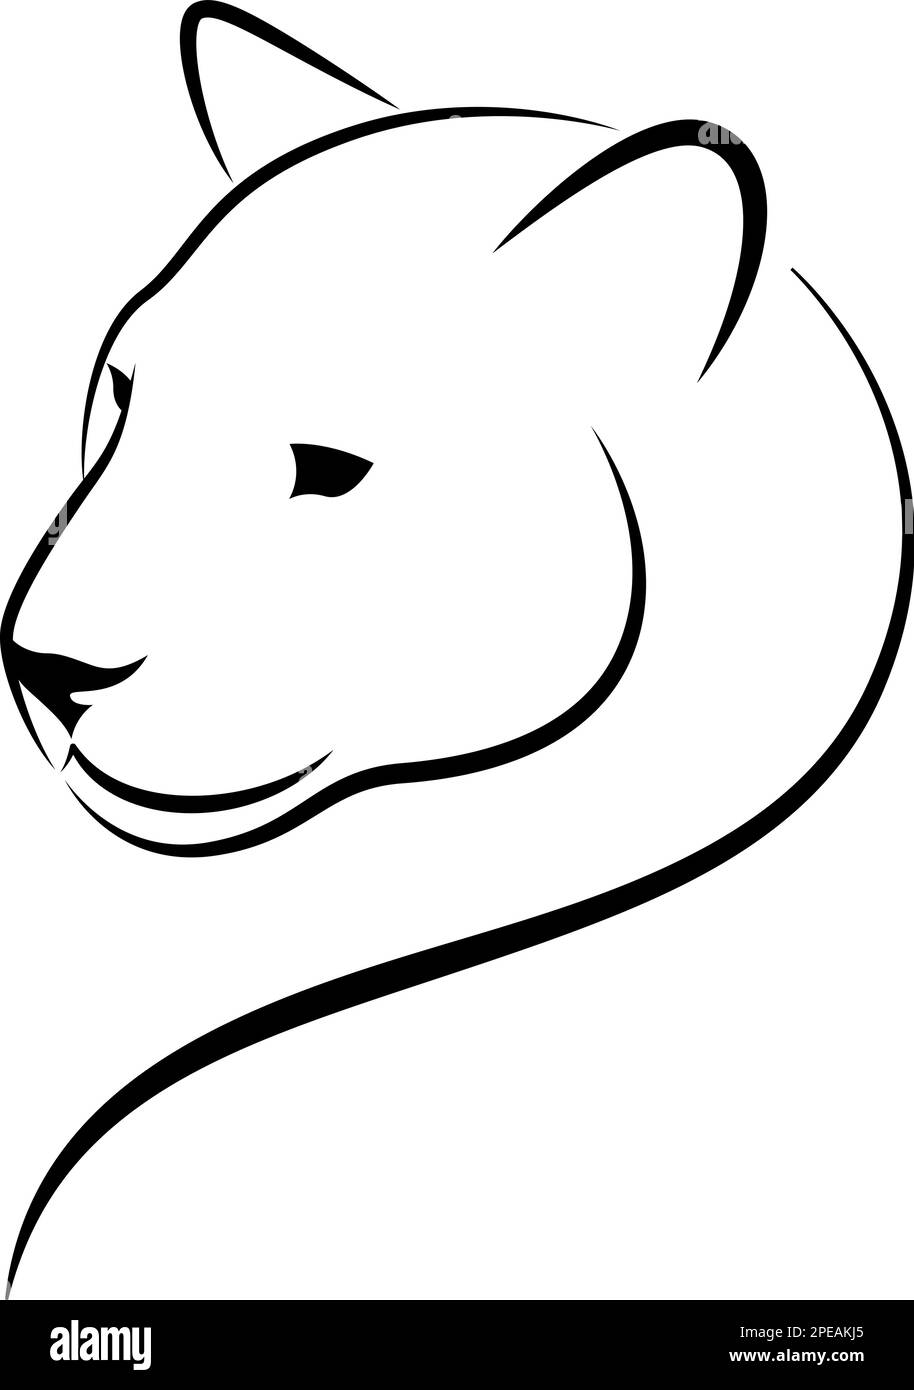 Schwarz-weiße Linien-Kunst von Cougar Head. Leopardensymbol, Maskottchen, Symbol, Avatar. Jaguar Tattoo, Panther-Logo Stock Vektor